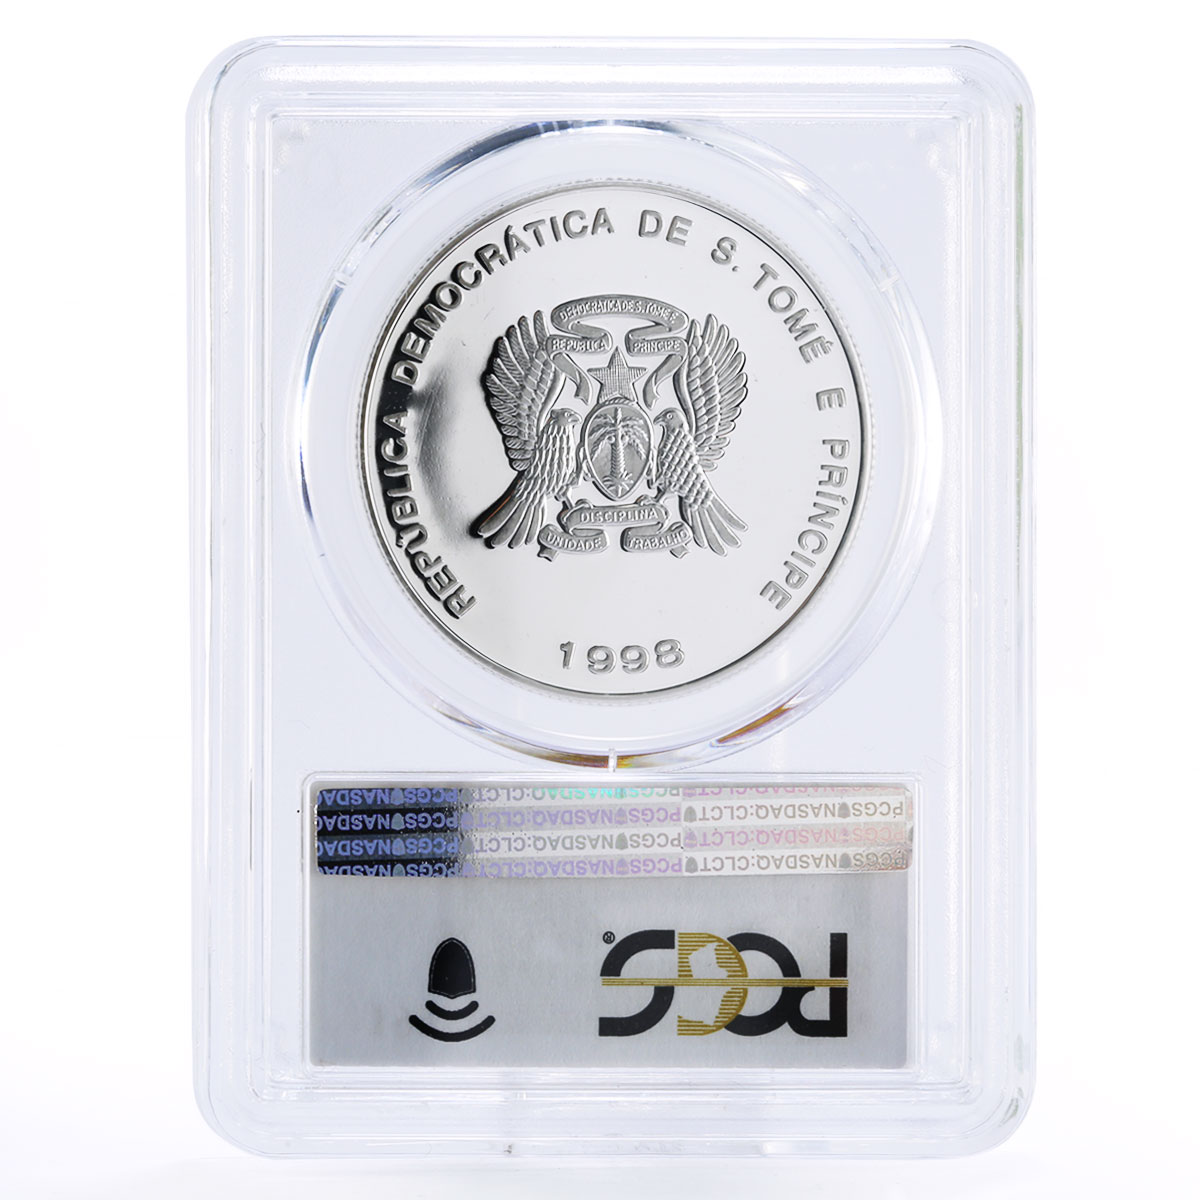 Sao Tome and Principe 10000 dobras European Union PR69 PCGS silver coin 1998